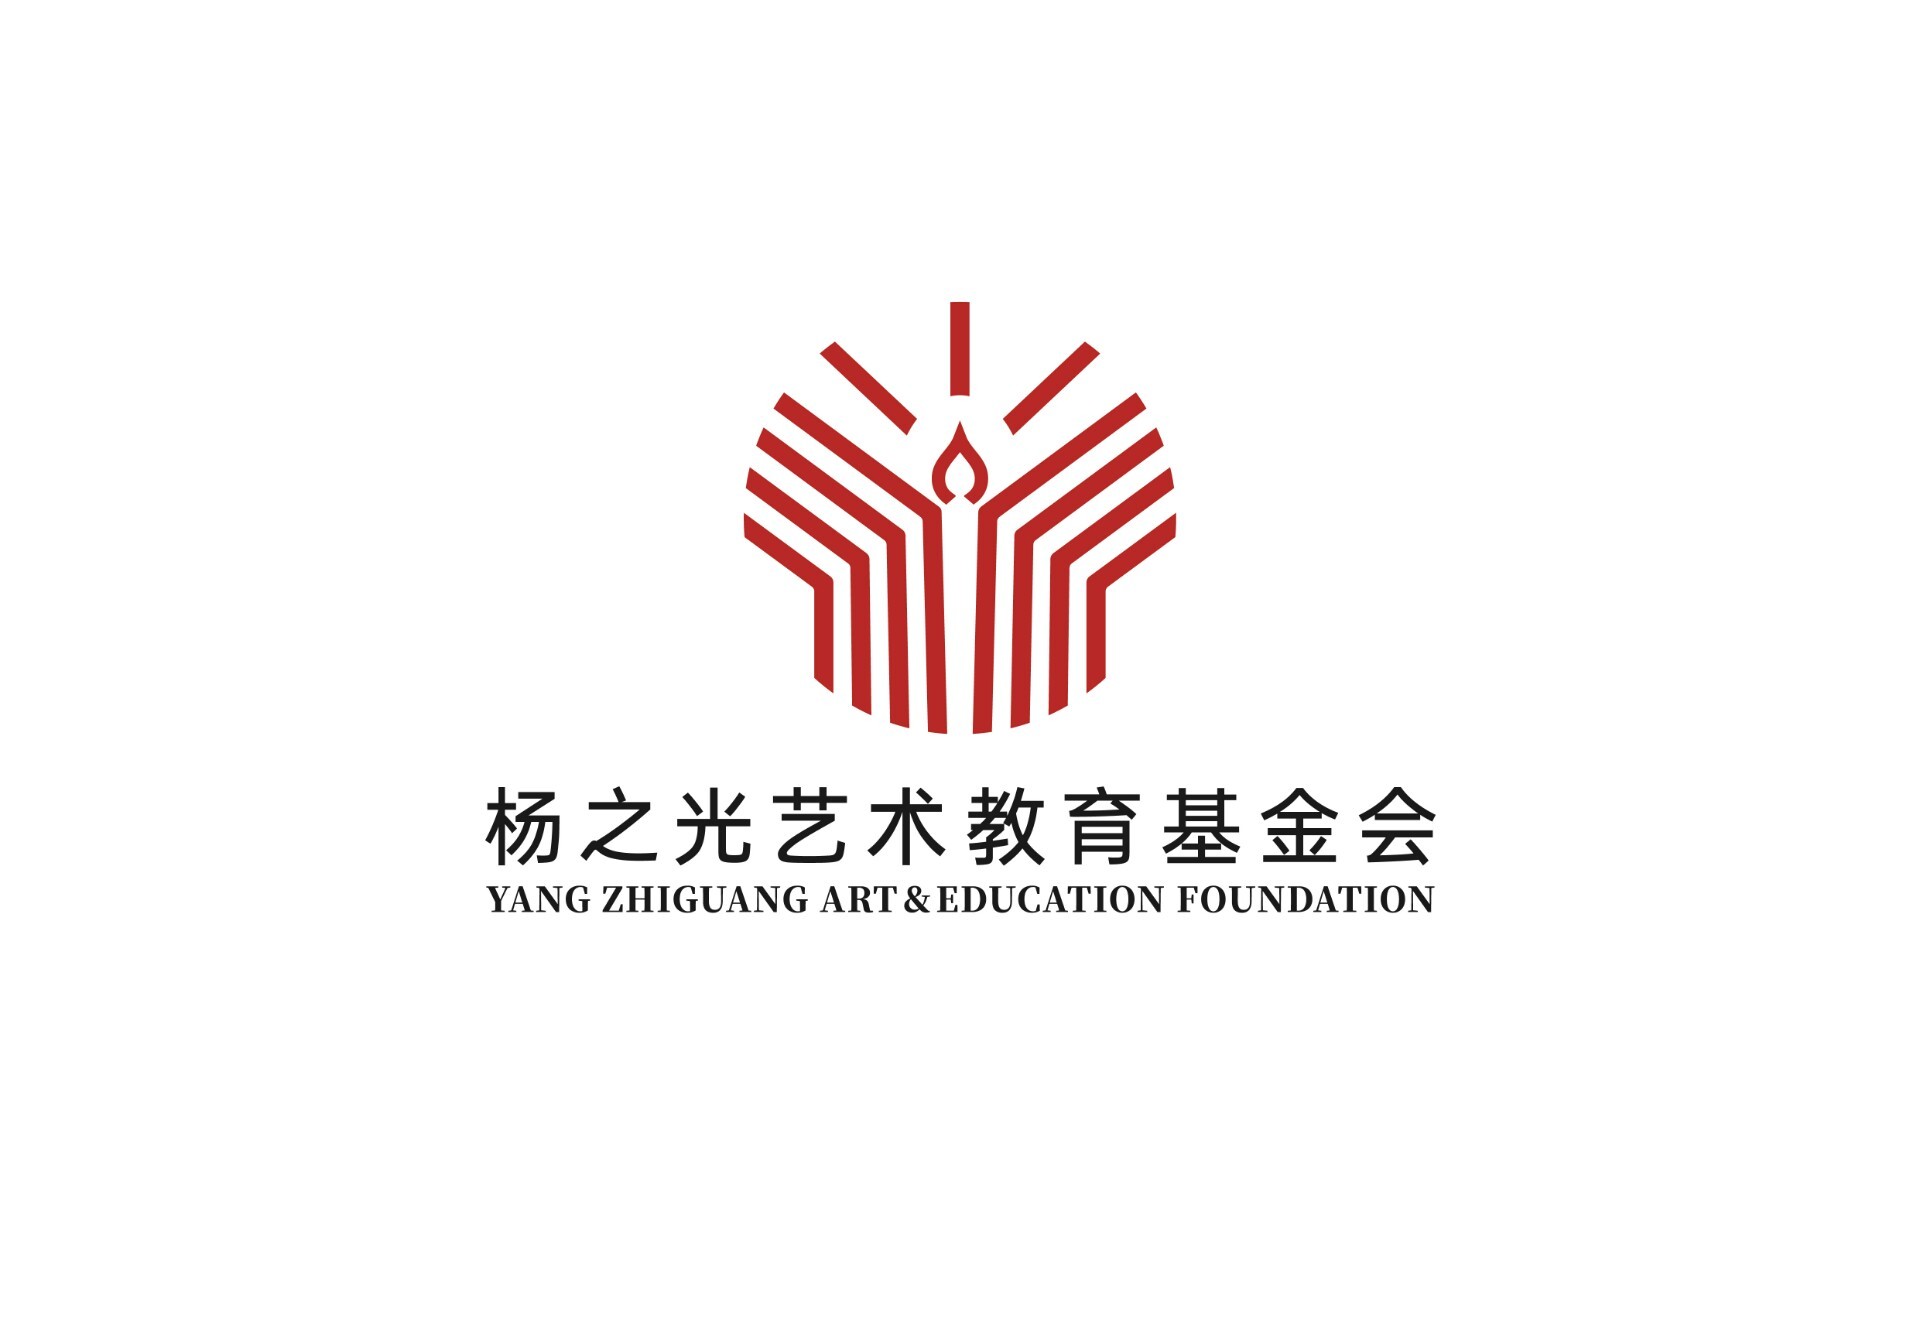 杨之光艺术教育基金会logo设计方案